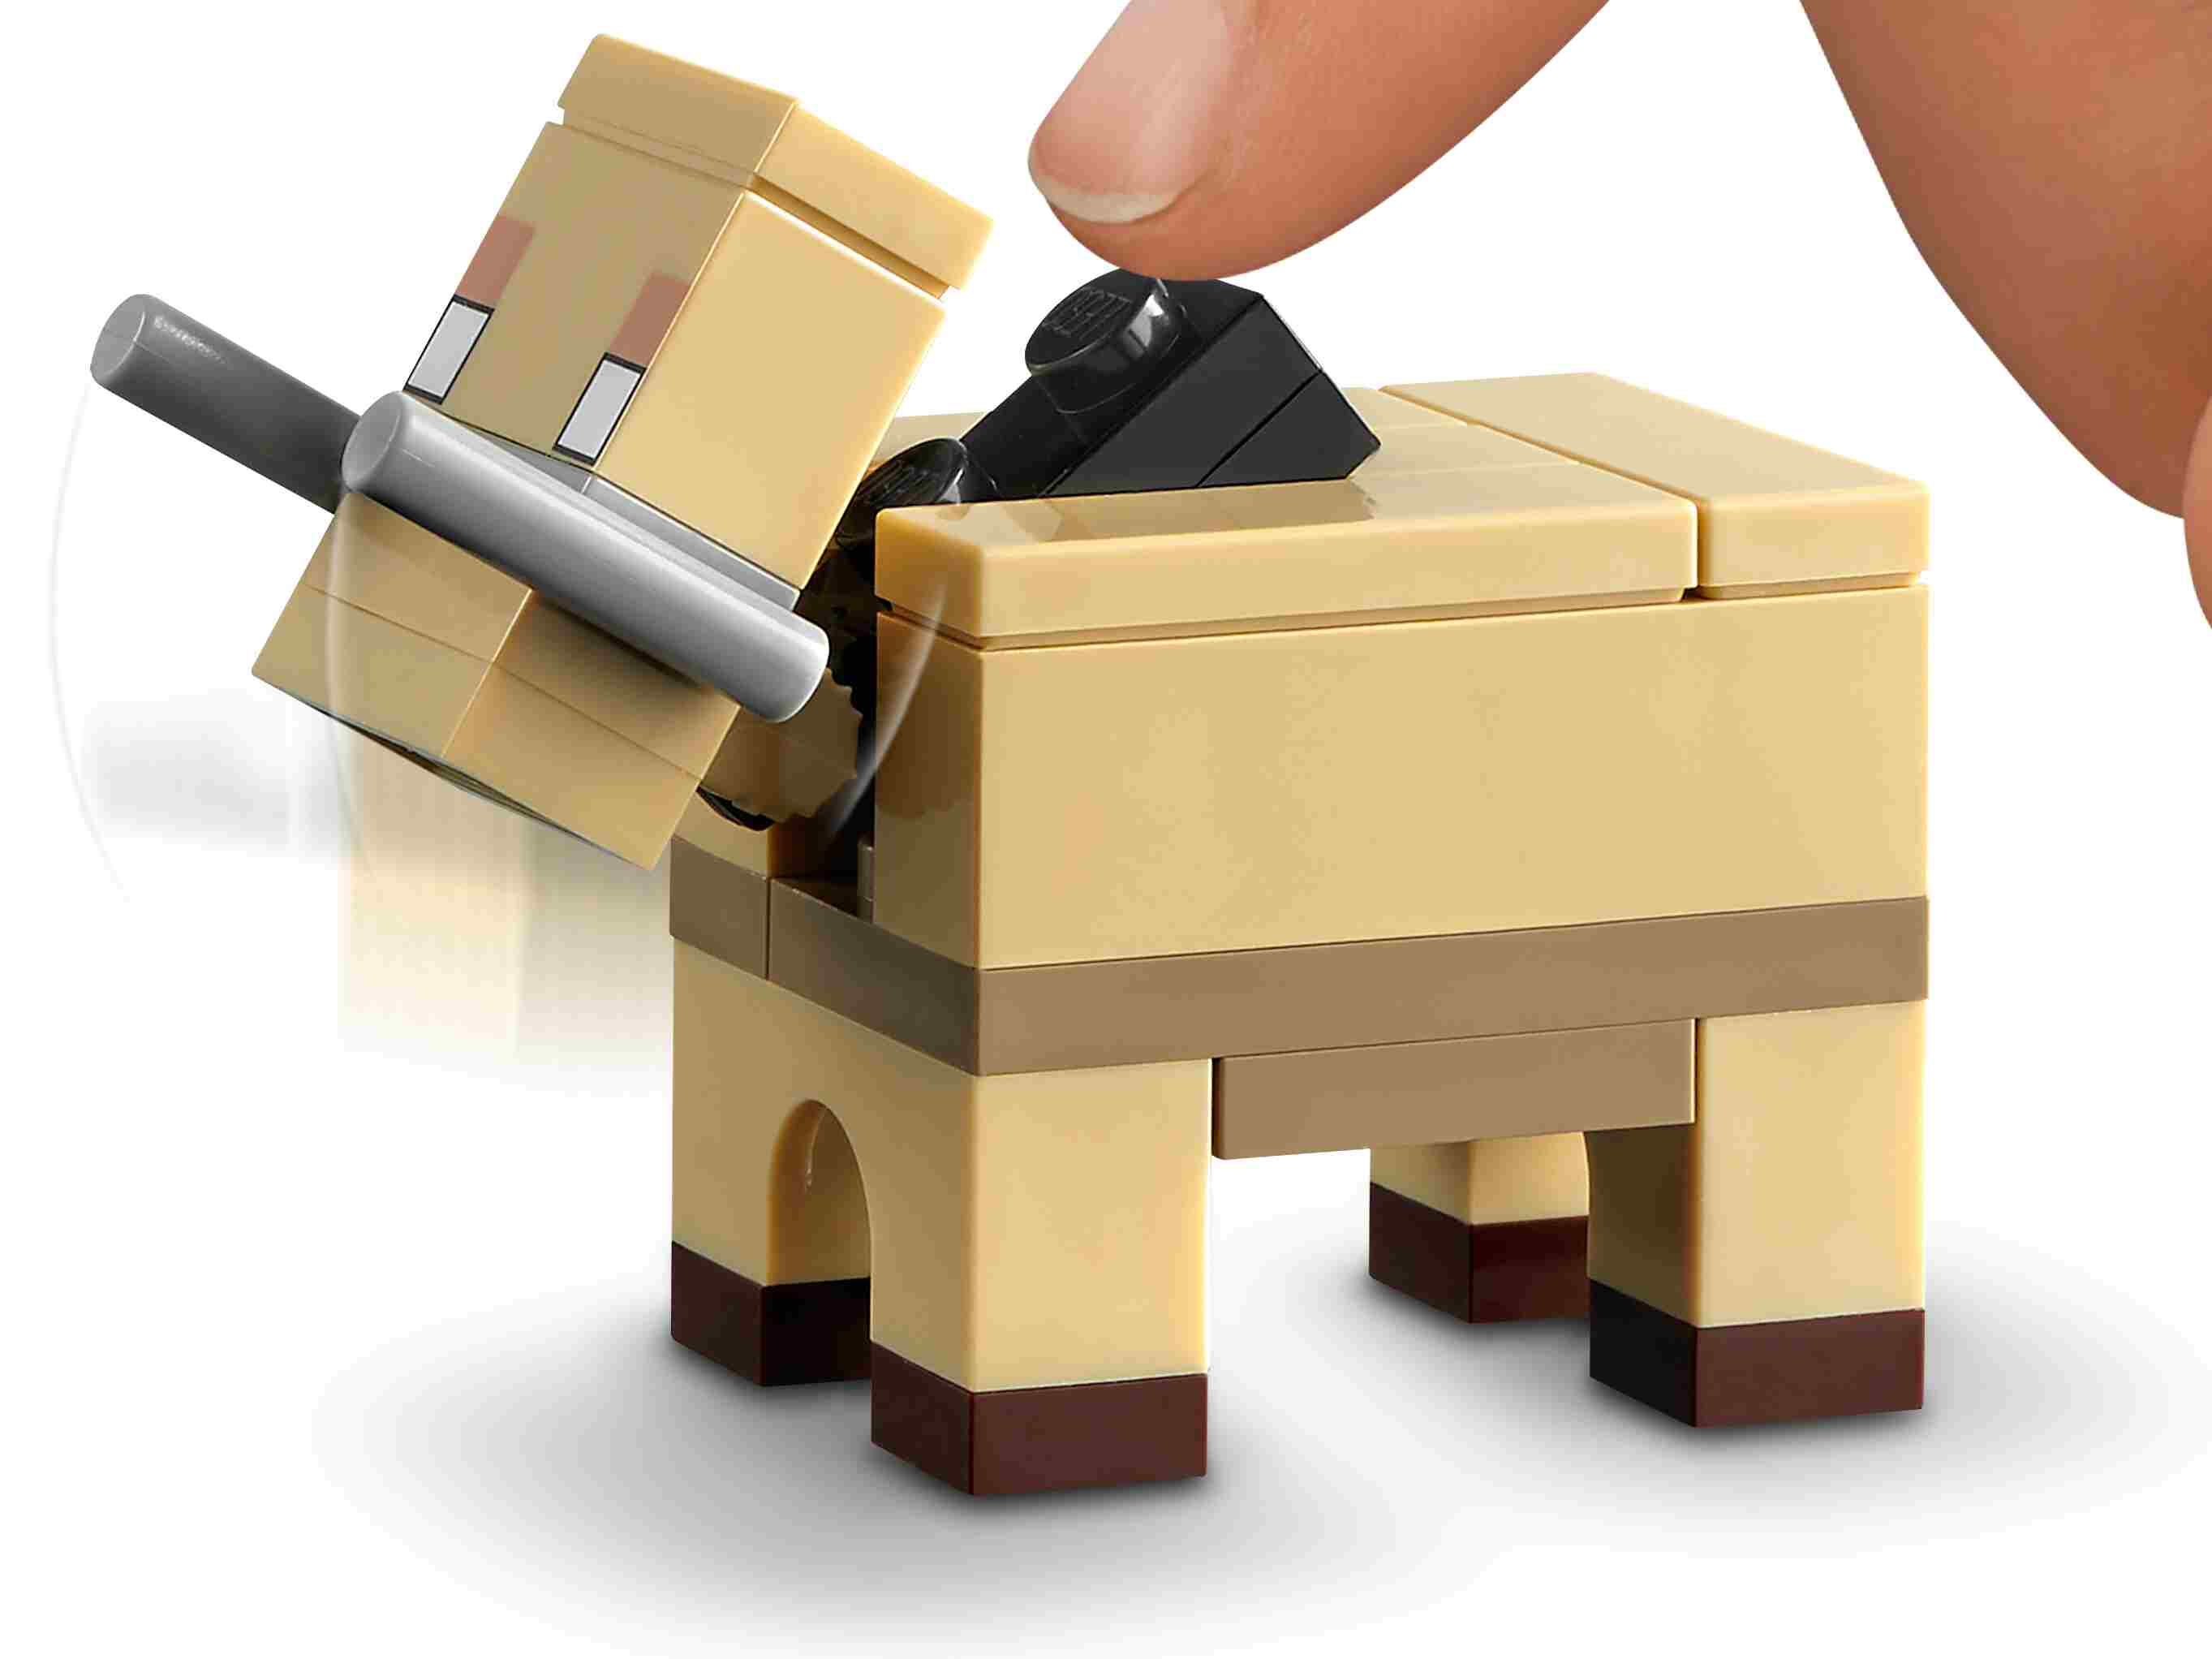 LEGO 21168 Minecraft Der Wirrwald Spielset mit Huntress, Hoglin u. 2 Piglins